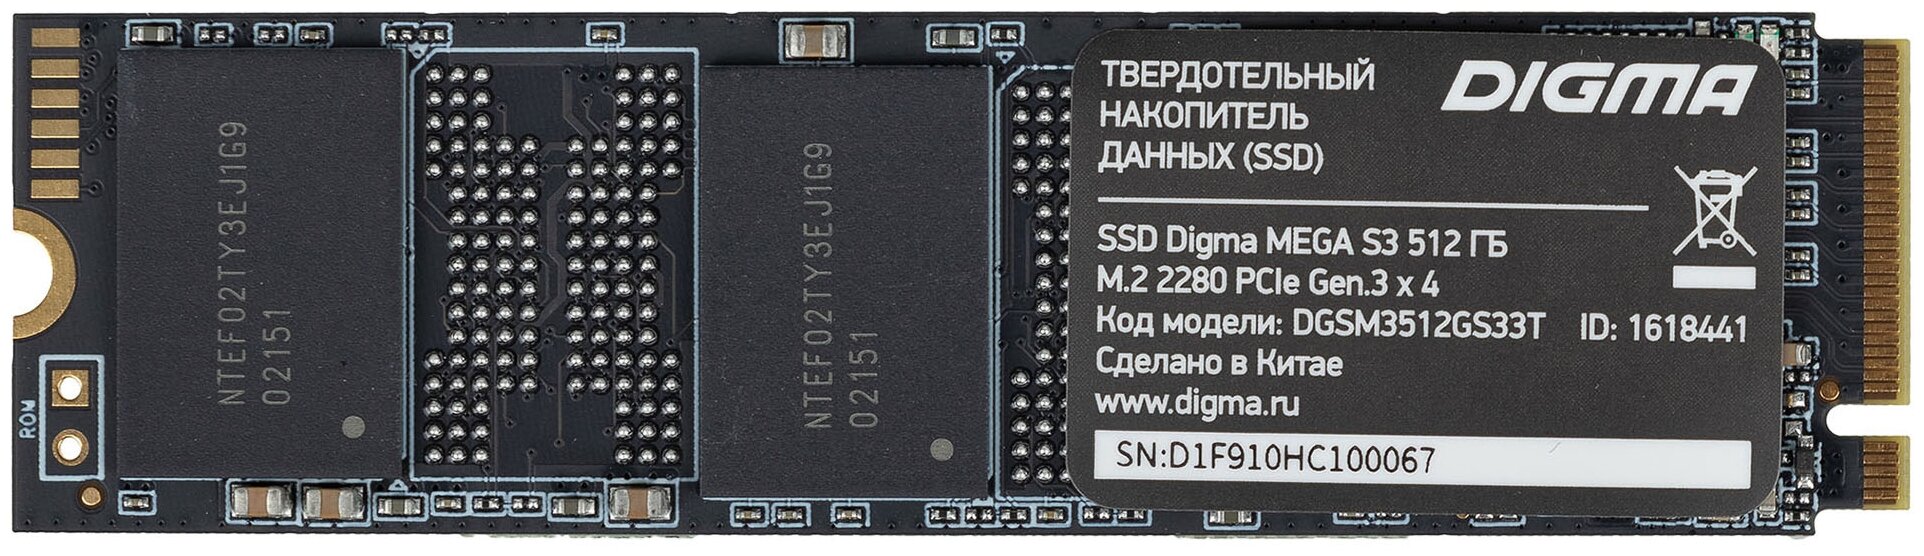 Накопитель SSD DIGMA M.2 Mega S3 512GB PCIe 3.0 x4 (DGSM3512GS33T)